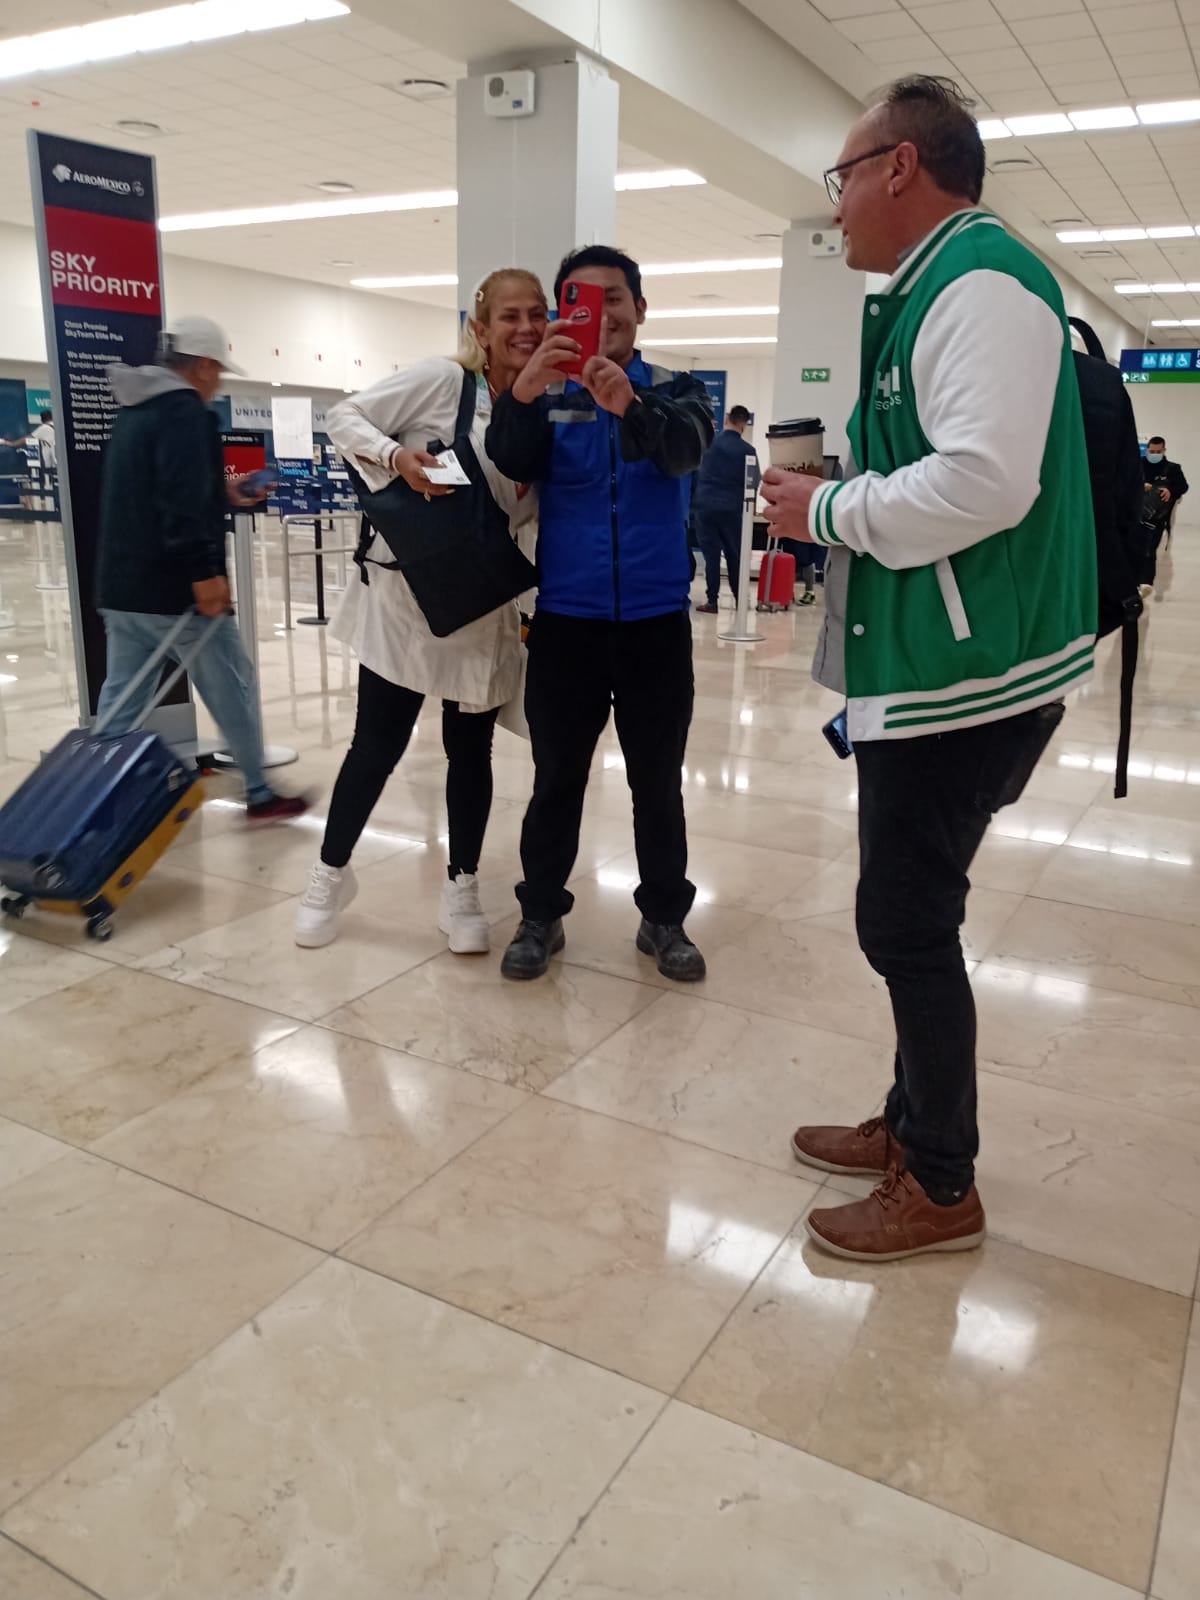 Niurka comparte momento con sus fans de Mérida previo a su vuelo a CDMX